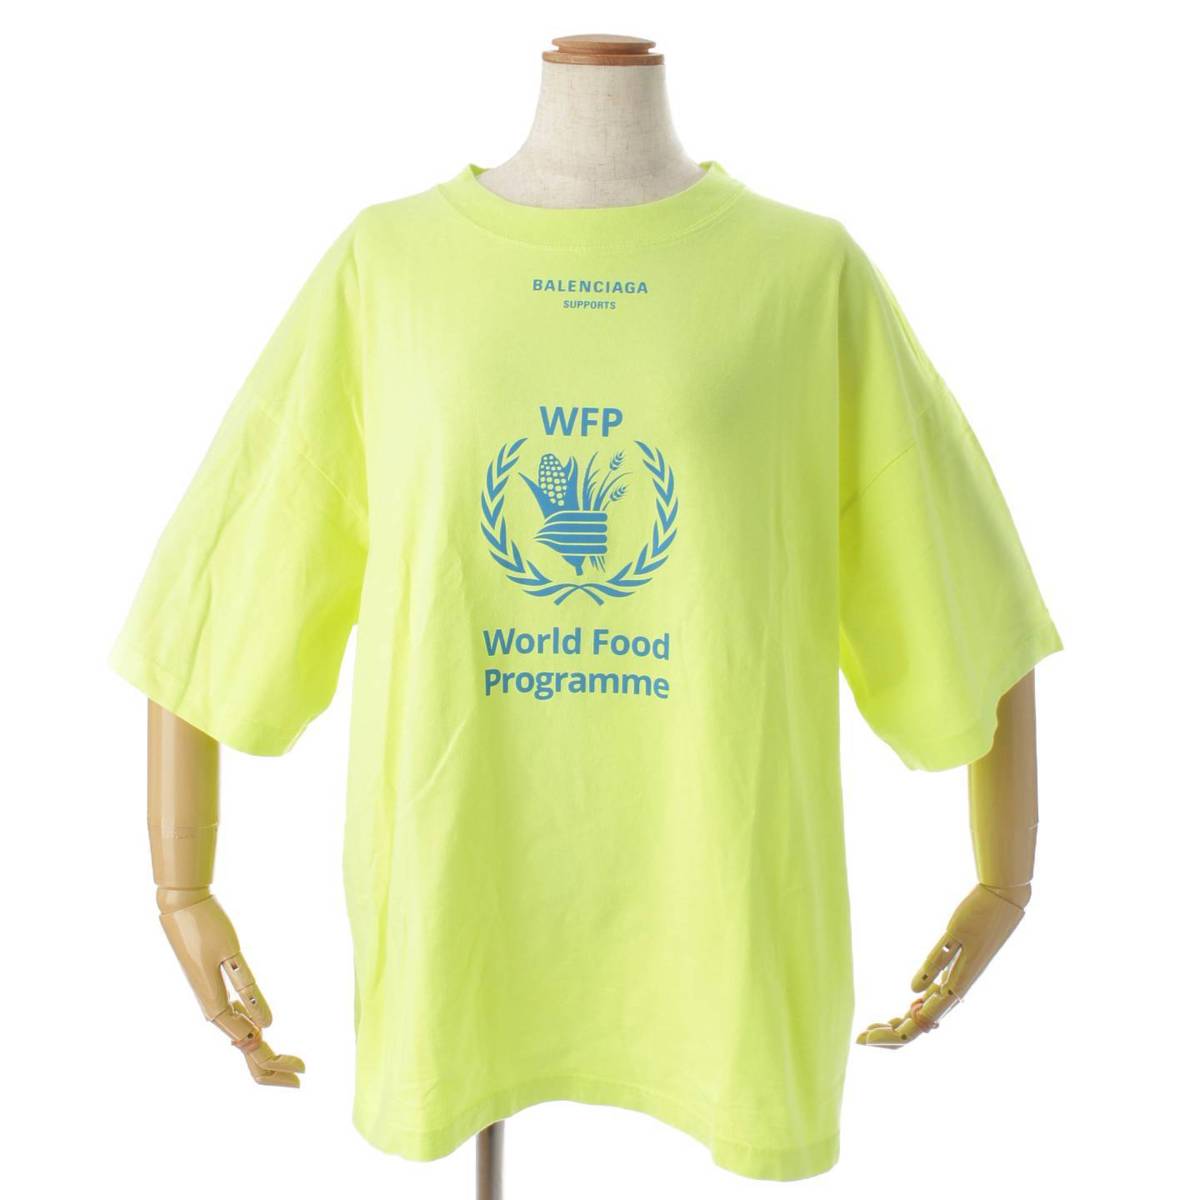 バレンシアガ(Balenciaga) 18AW WFP プリント ロゴ オーバーサイズ Tシャツ トップス 541705 イエロー XL